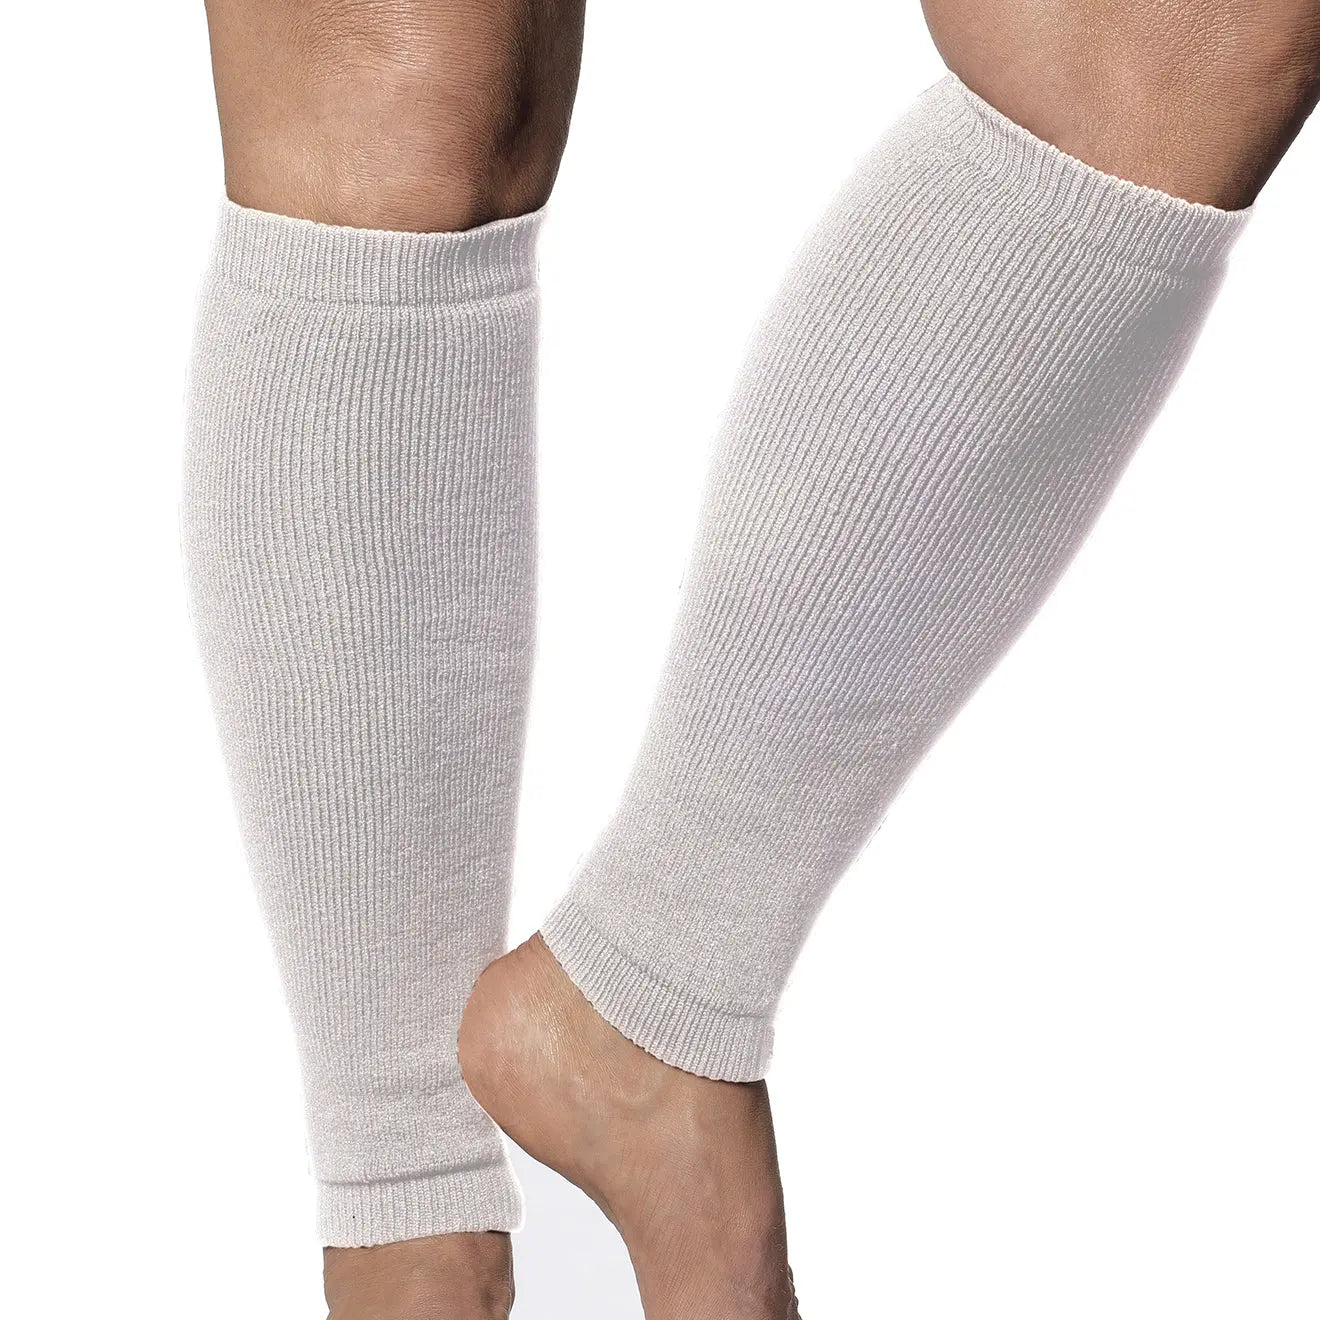 Leg Sleeves - Light Weight. Frail Skin Protectors. White